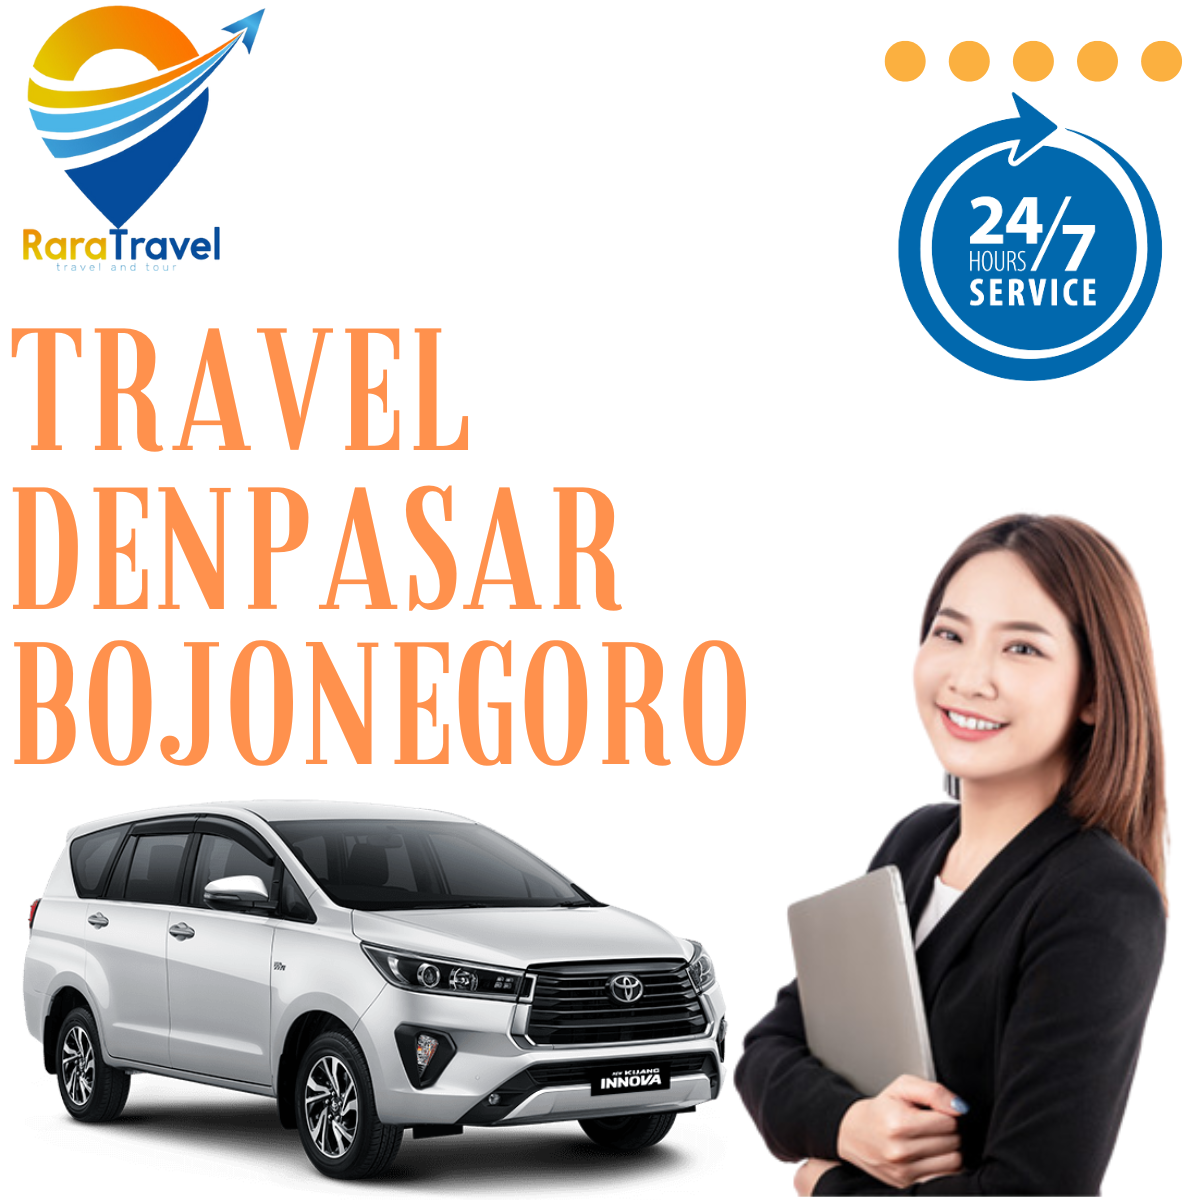 Travel Denpasar Bojonegoro, Harga Tiket Murah, Layanan 24 Jam